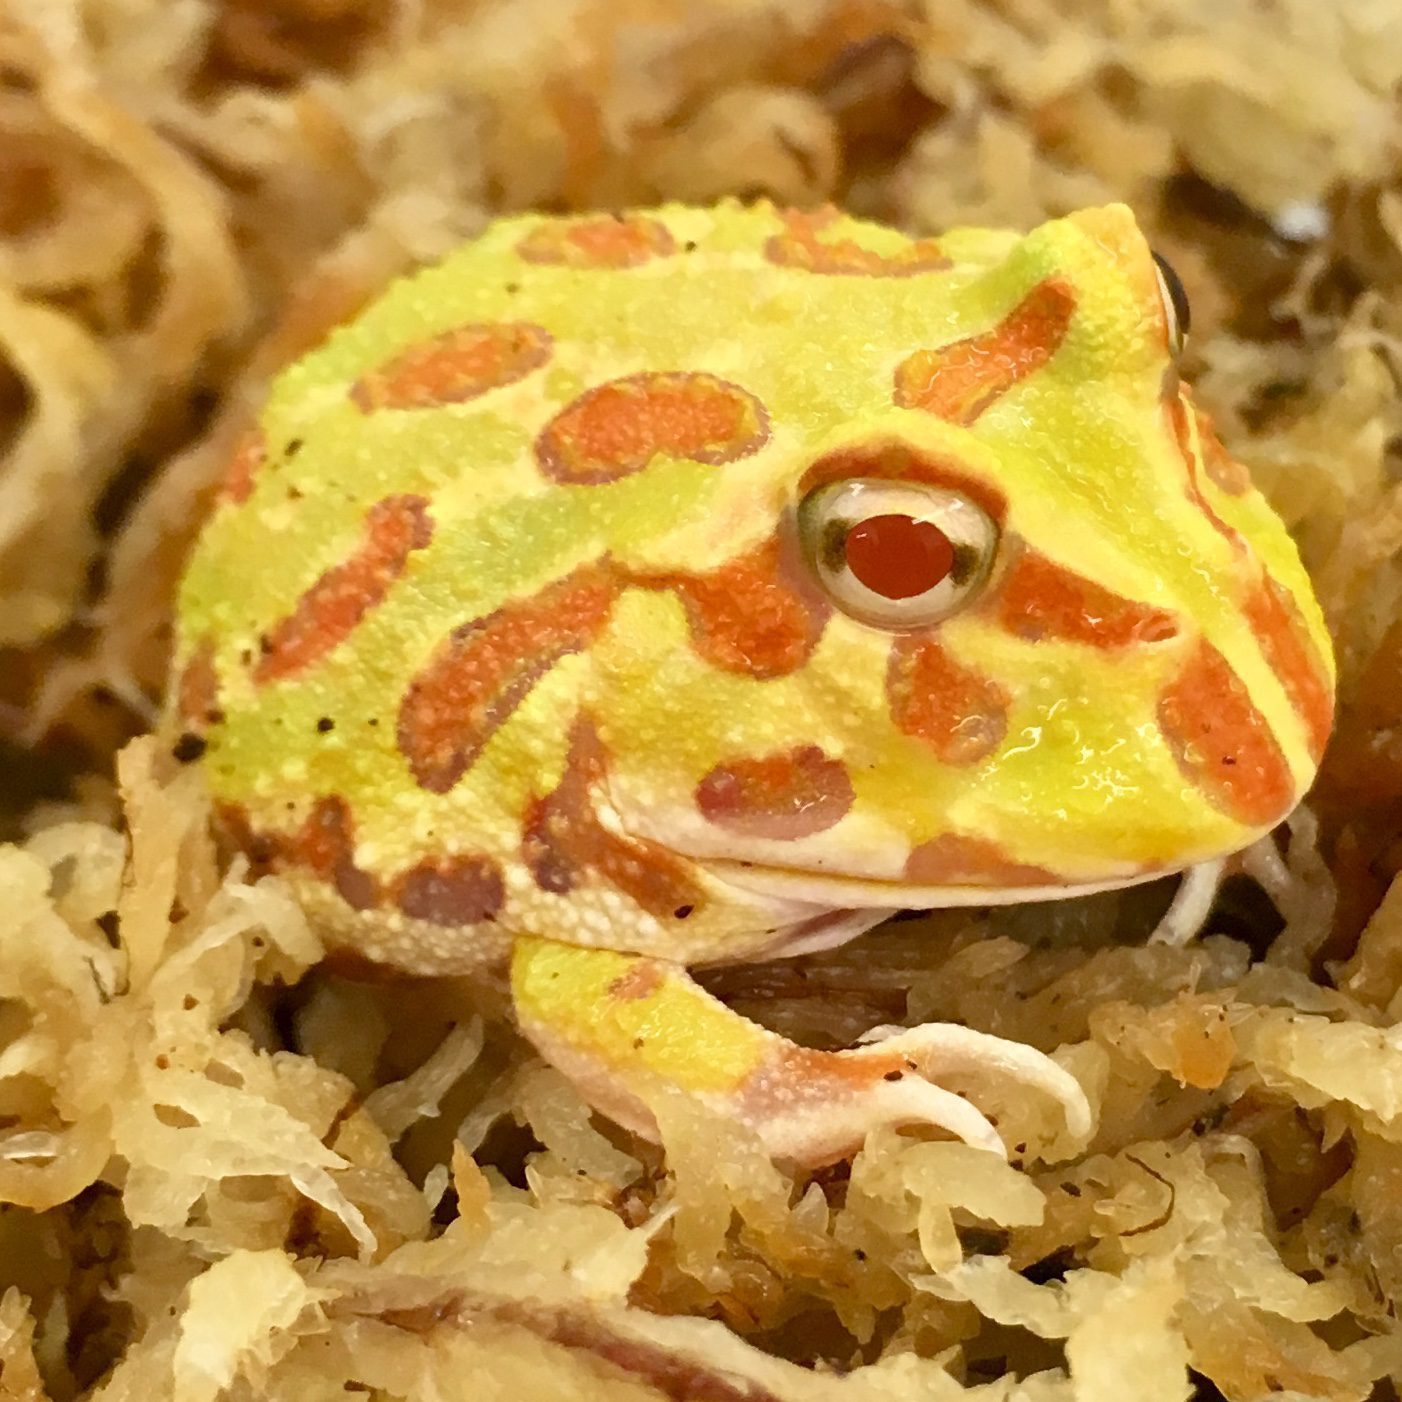 CB Albino Horned Frog